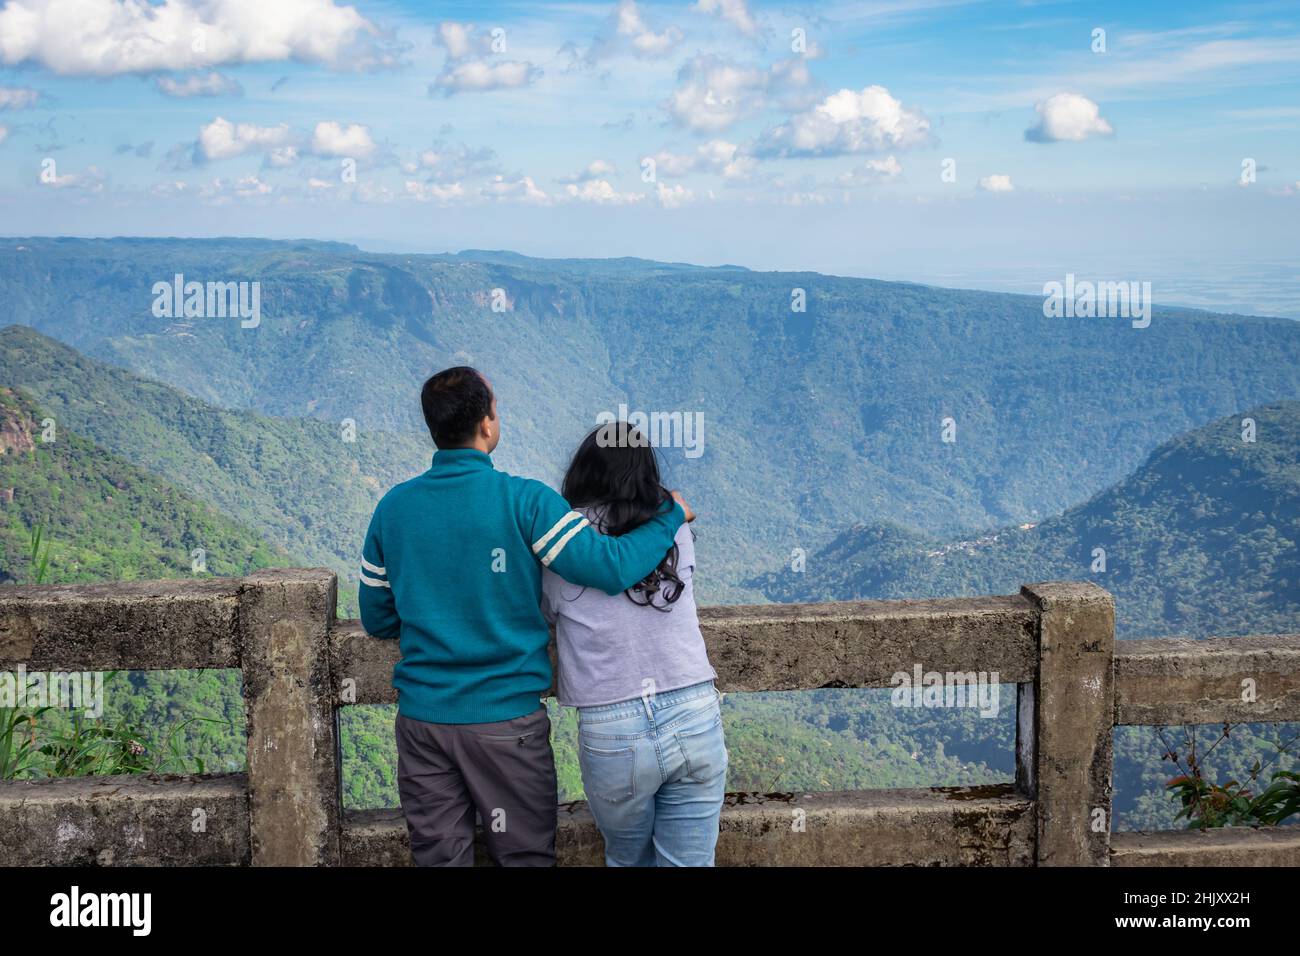 Das junge Paar, das am Nachmittag die Bergkette mit hellblauem Himmel aus einem flachen Winkel beobachtet, wurde am sieben Schwester-Wasserfall cherrapunji meghal aufgenommen Stockfoto